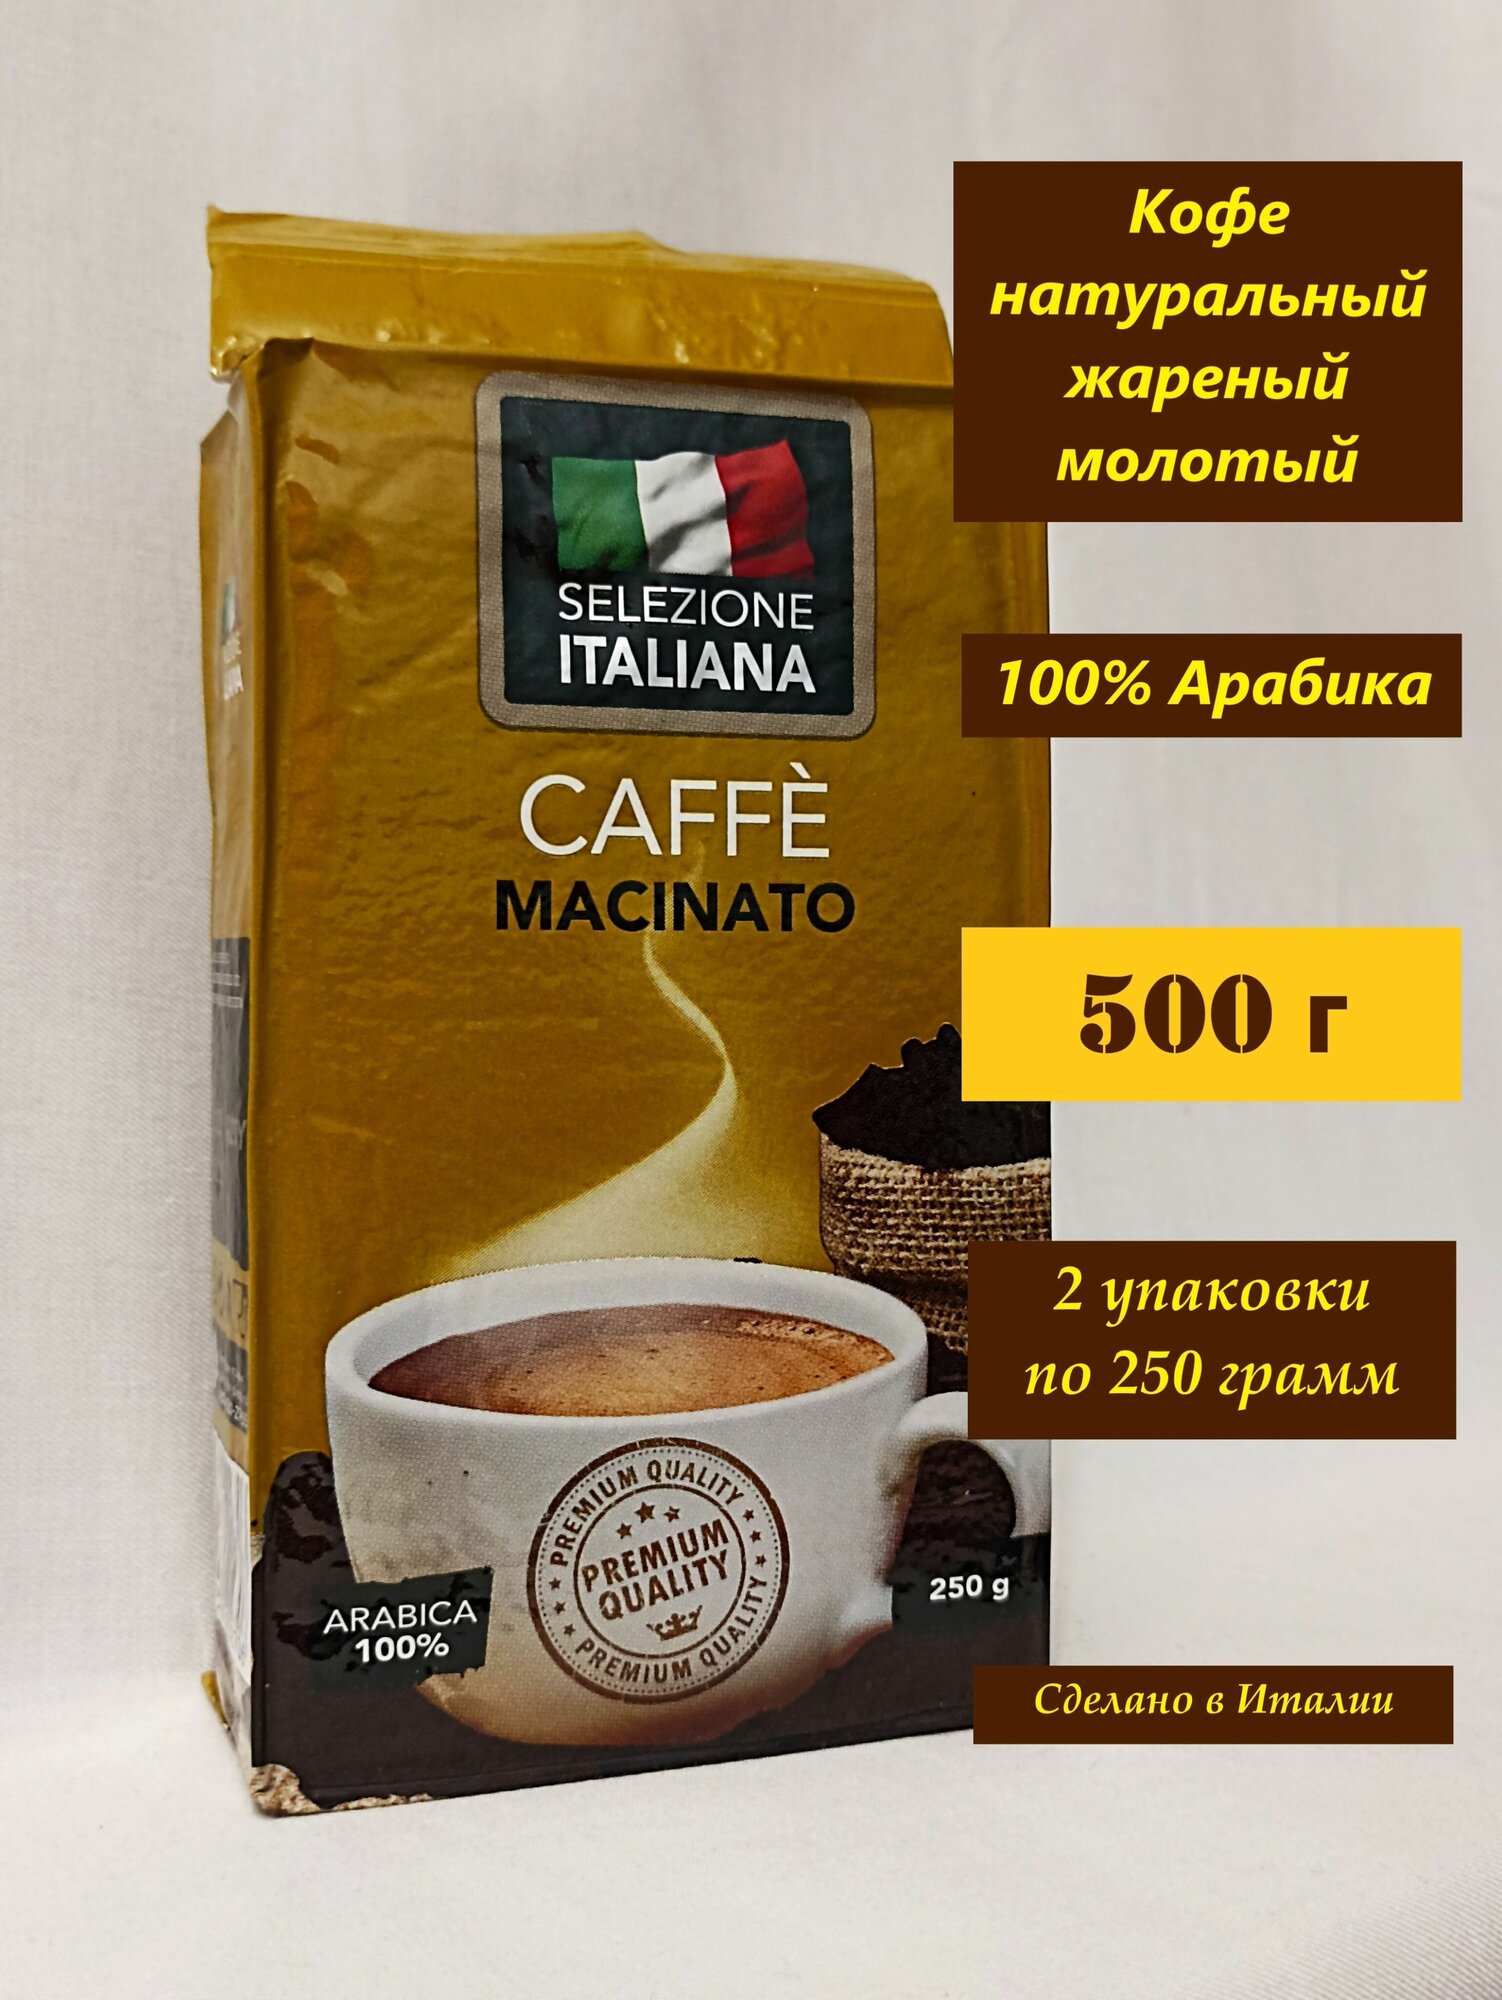 Кофе молотый 500 г (2 шт. по 250 г) Арабика 100% (Италия) Selezione ITALIANA CAFFE MACINATO, кофе натуральный жареный молотый в упаковке по 250 грамм - фотография № 1